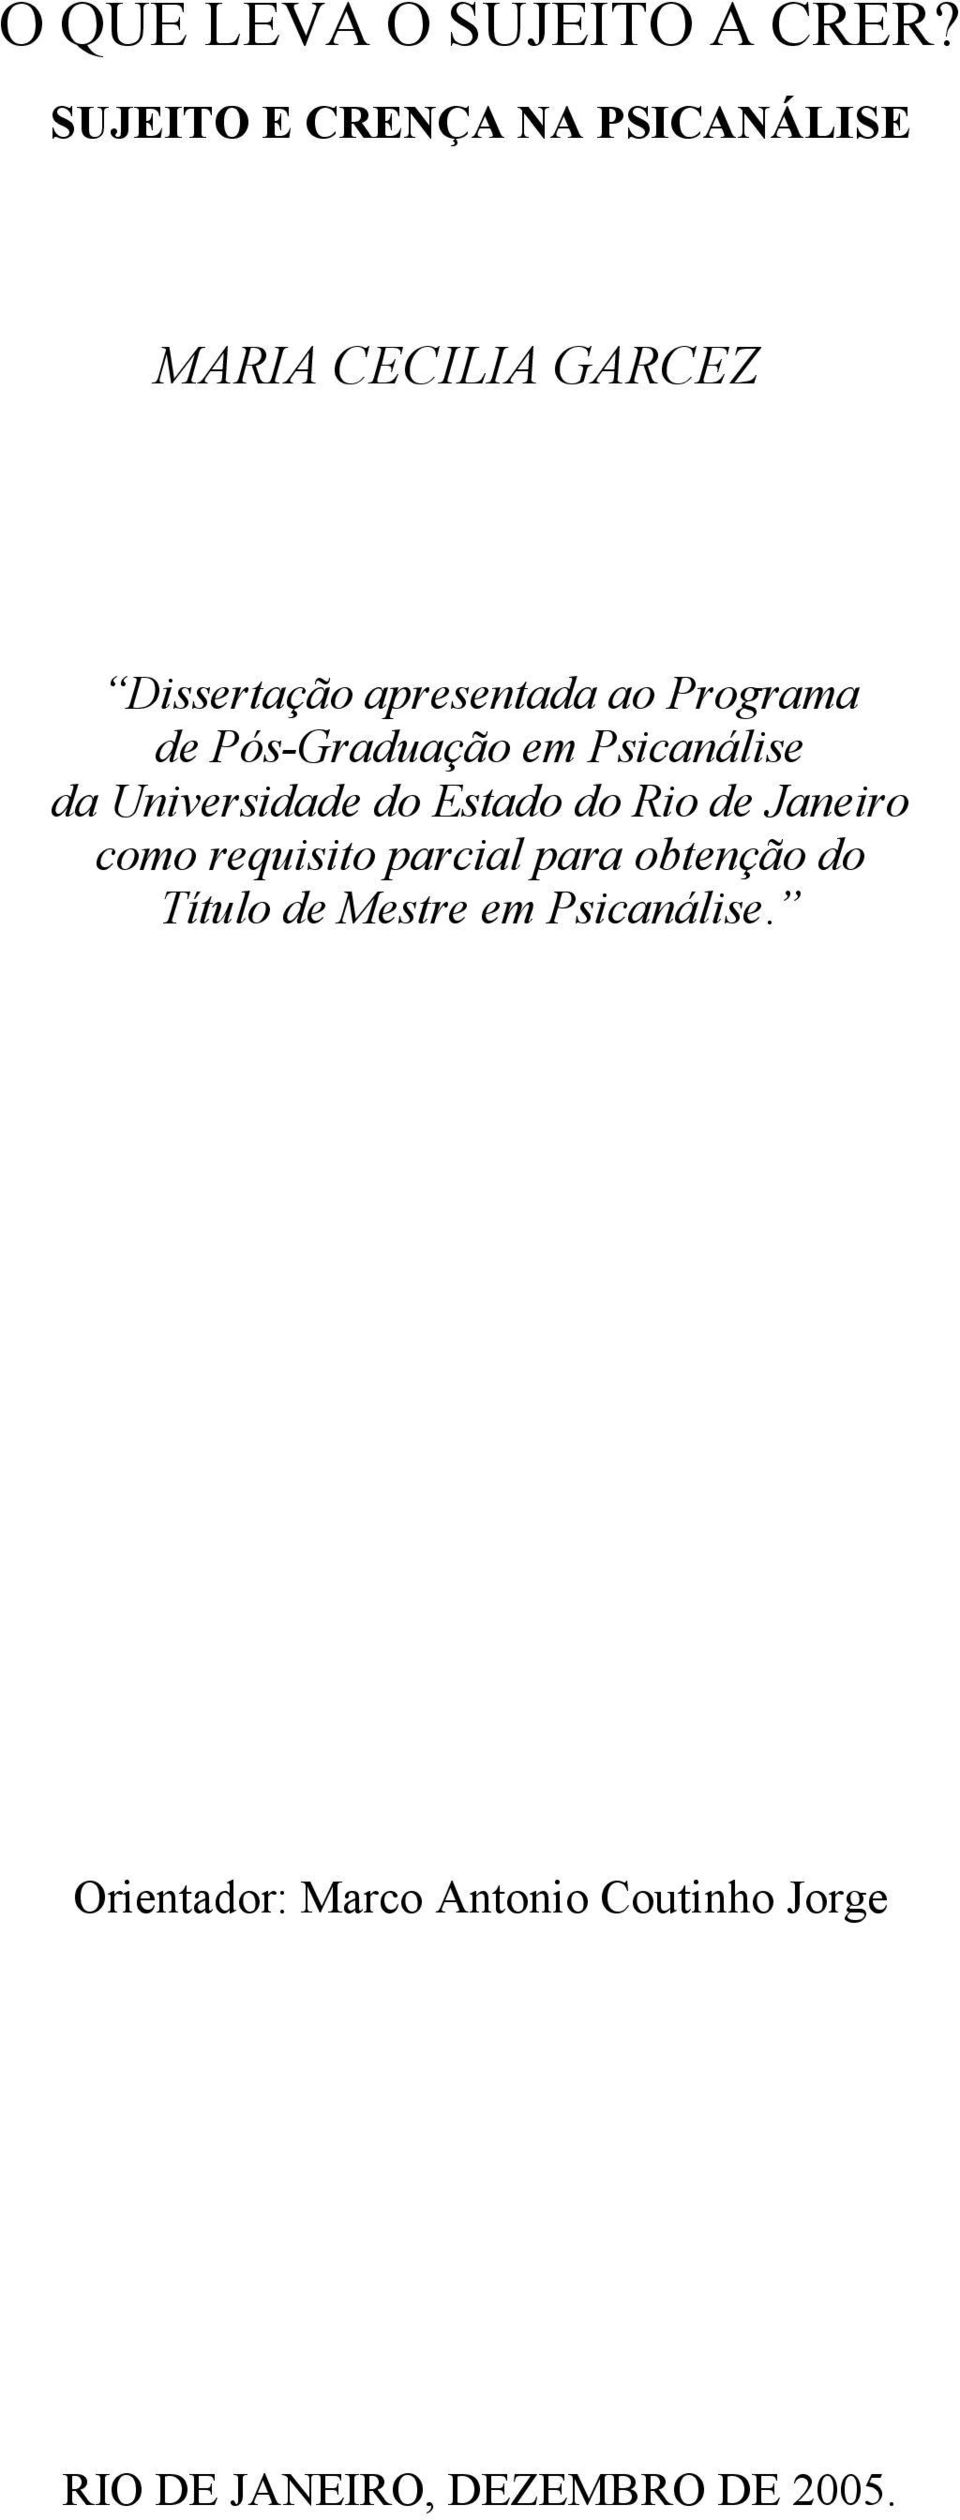 Programa de Pós-Graduação em Psicanálise da Universidade do Estado do Rio de Janeiro